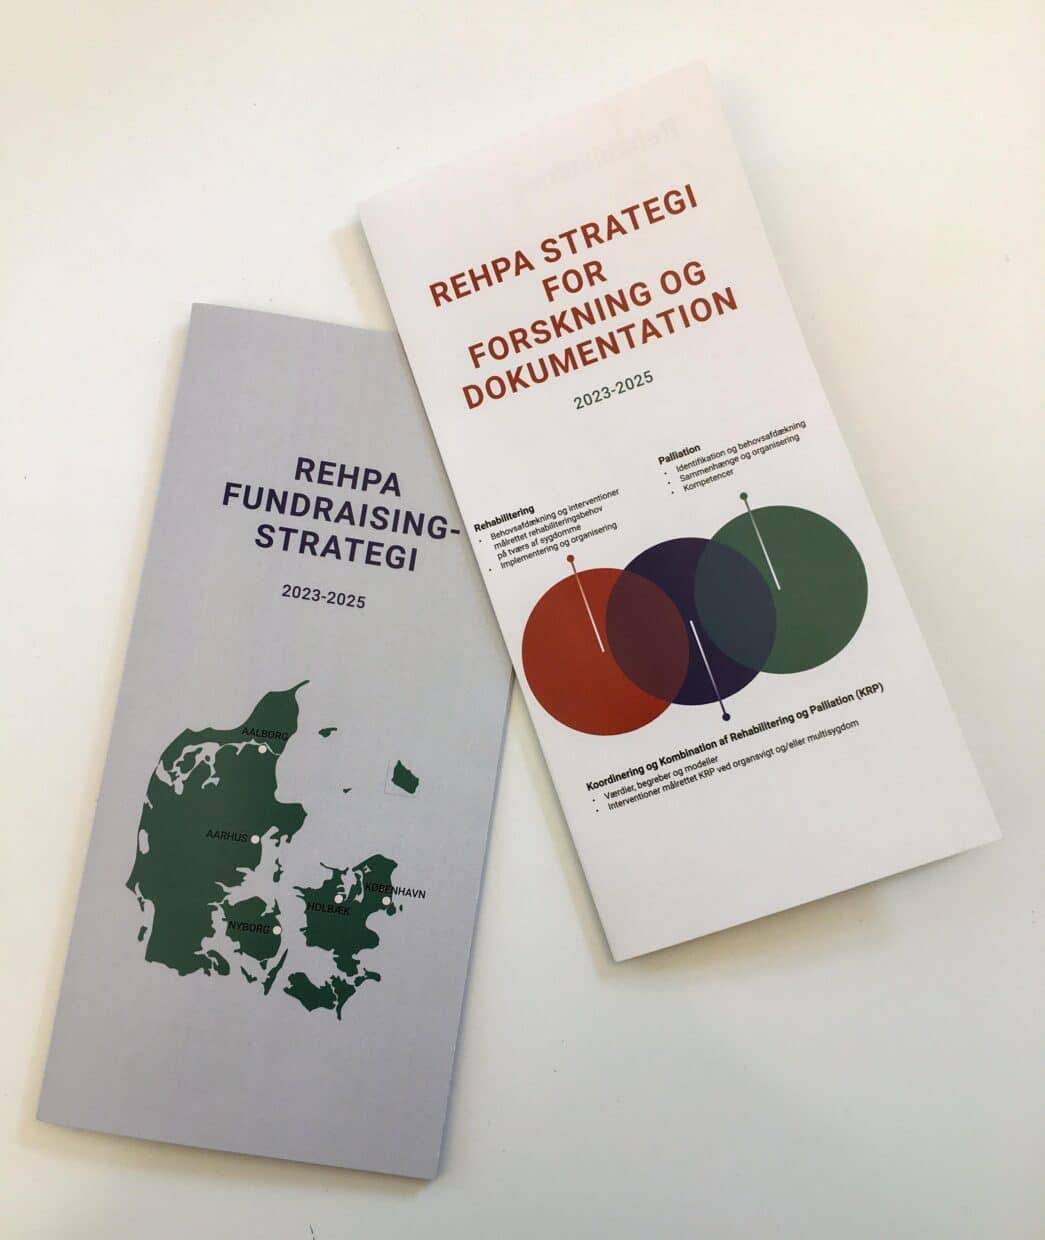 Foto af folderversionen af REHPAs strategier for Fundraising, Forskning og Dokumentation